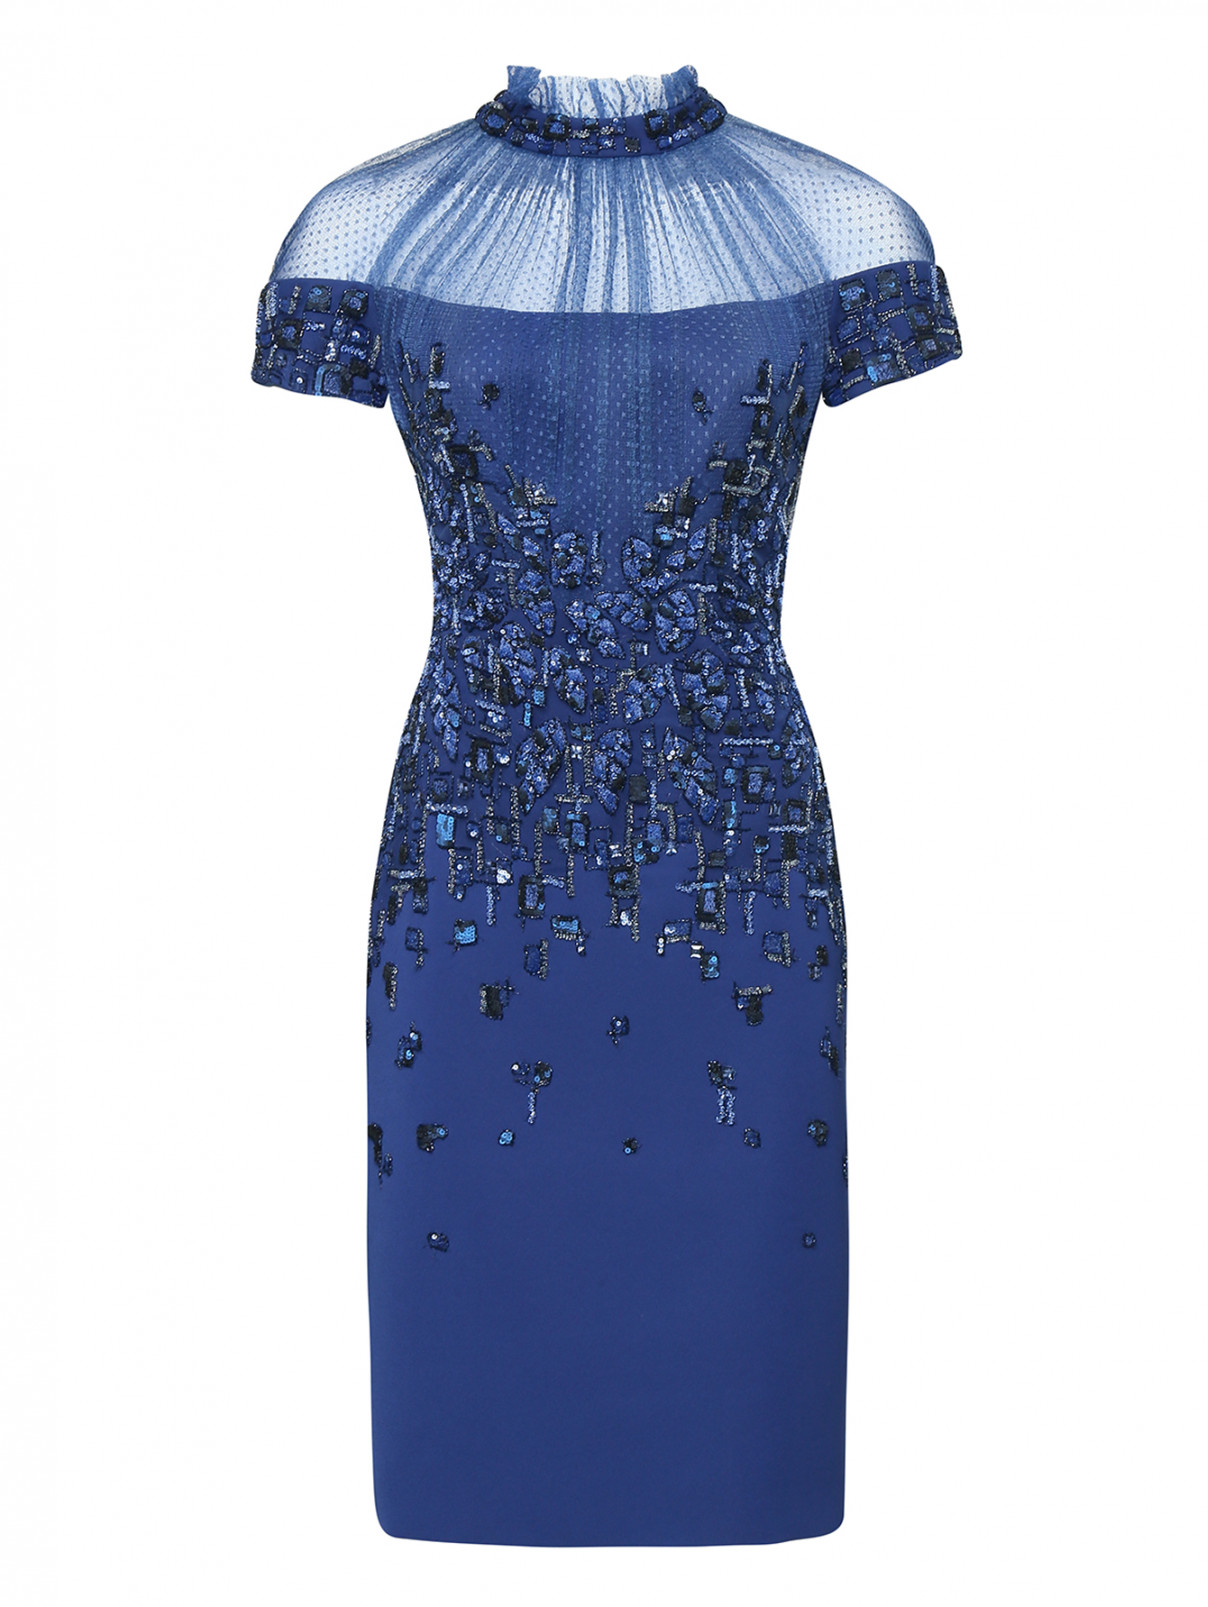 Платье с вышивкой пайетками и бусинами Tony Ward  –  Общий вид  – Цвет:  Синий